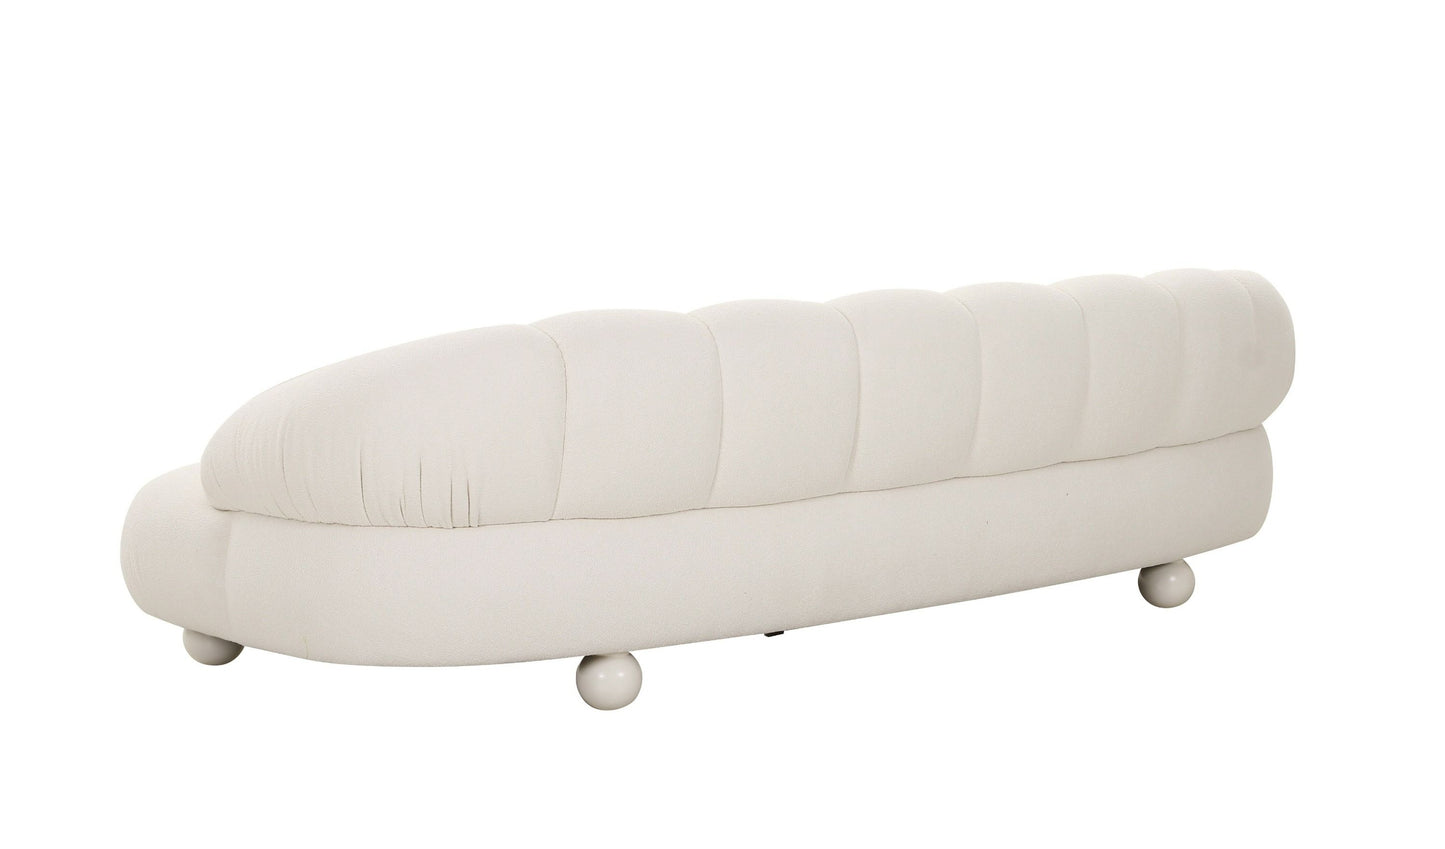 Divani Casa Duran - Contemporary White Fabric 4-Seater Sofa